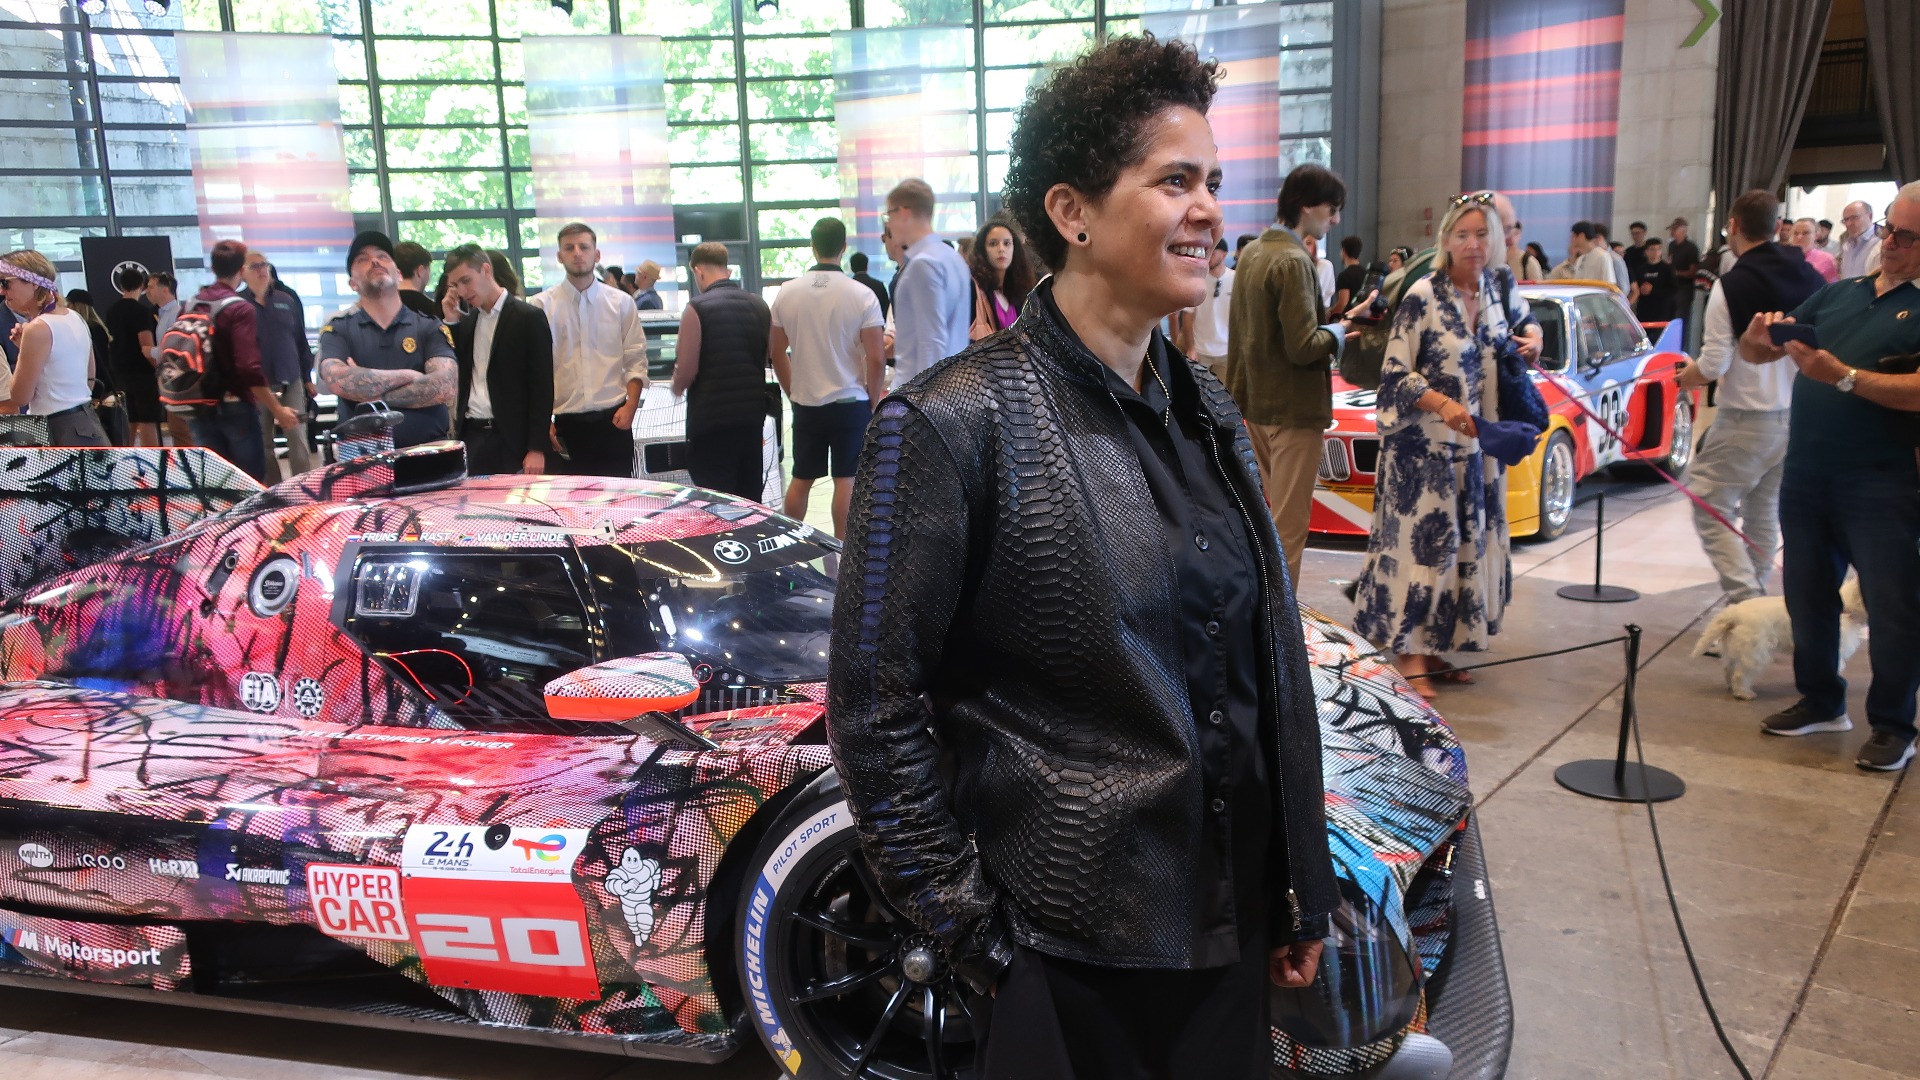 En fornøyd Julie Mehretu med sitt kunstverk på fire hjul, som først vil være 100 prosent som Art Car etter å ha pådratt seg sine skader og skavanker i løpet av Le Mans helgen. 